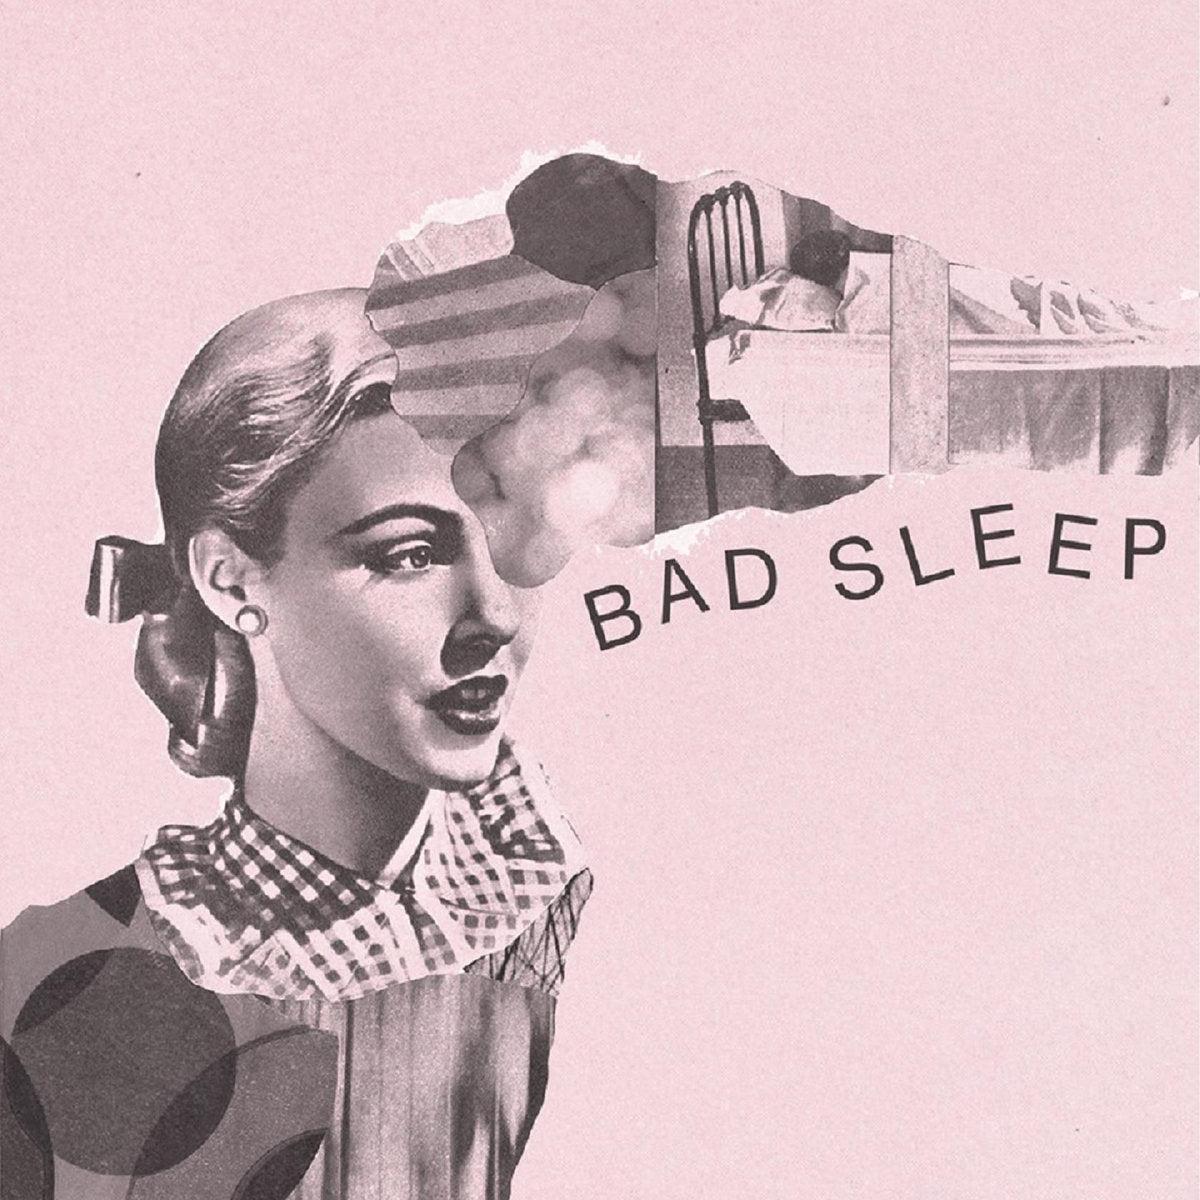 Bad Sleep - s/t 7" - Vinyl - Rumbletowne